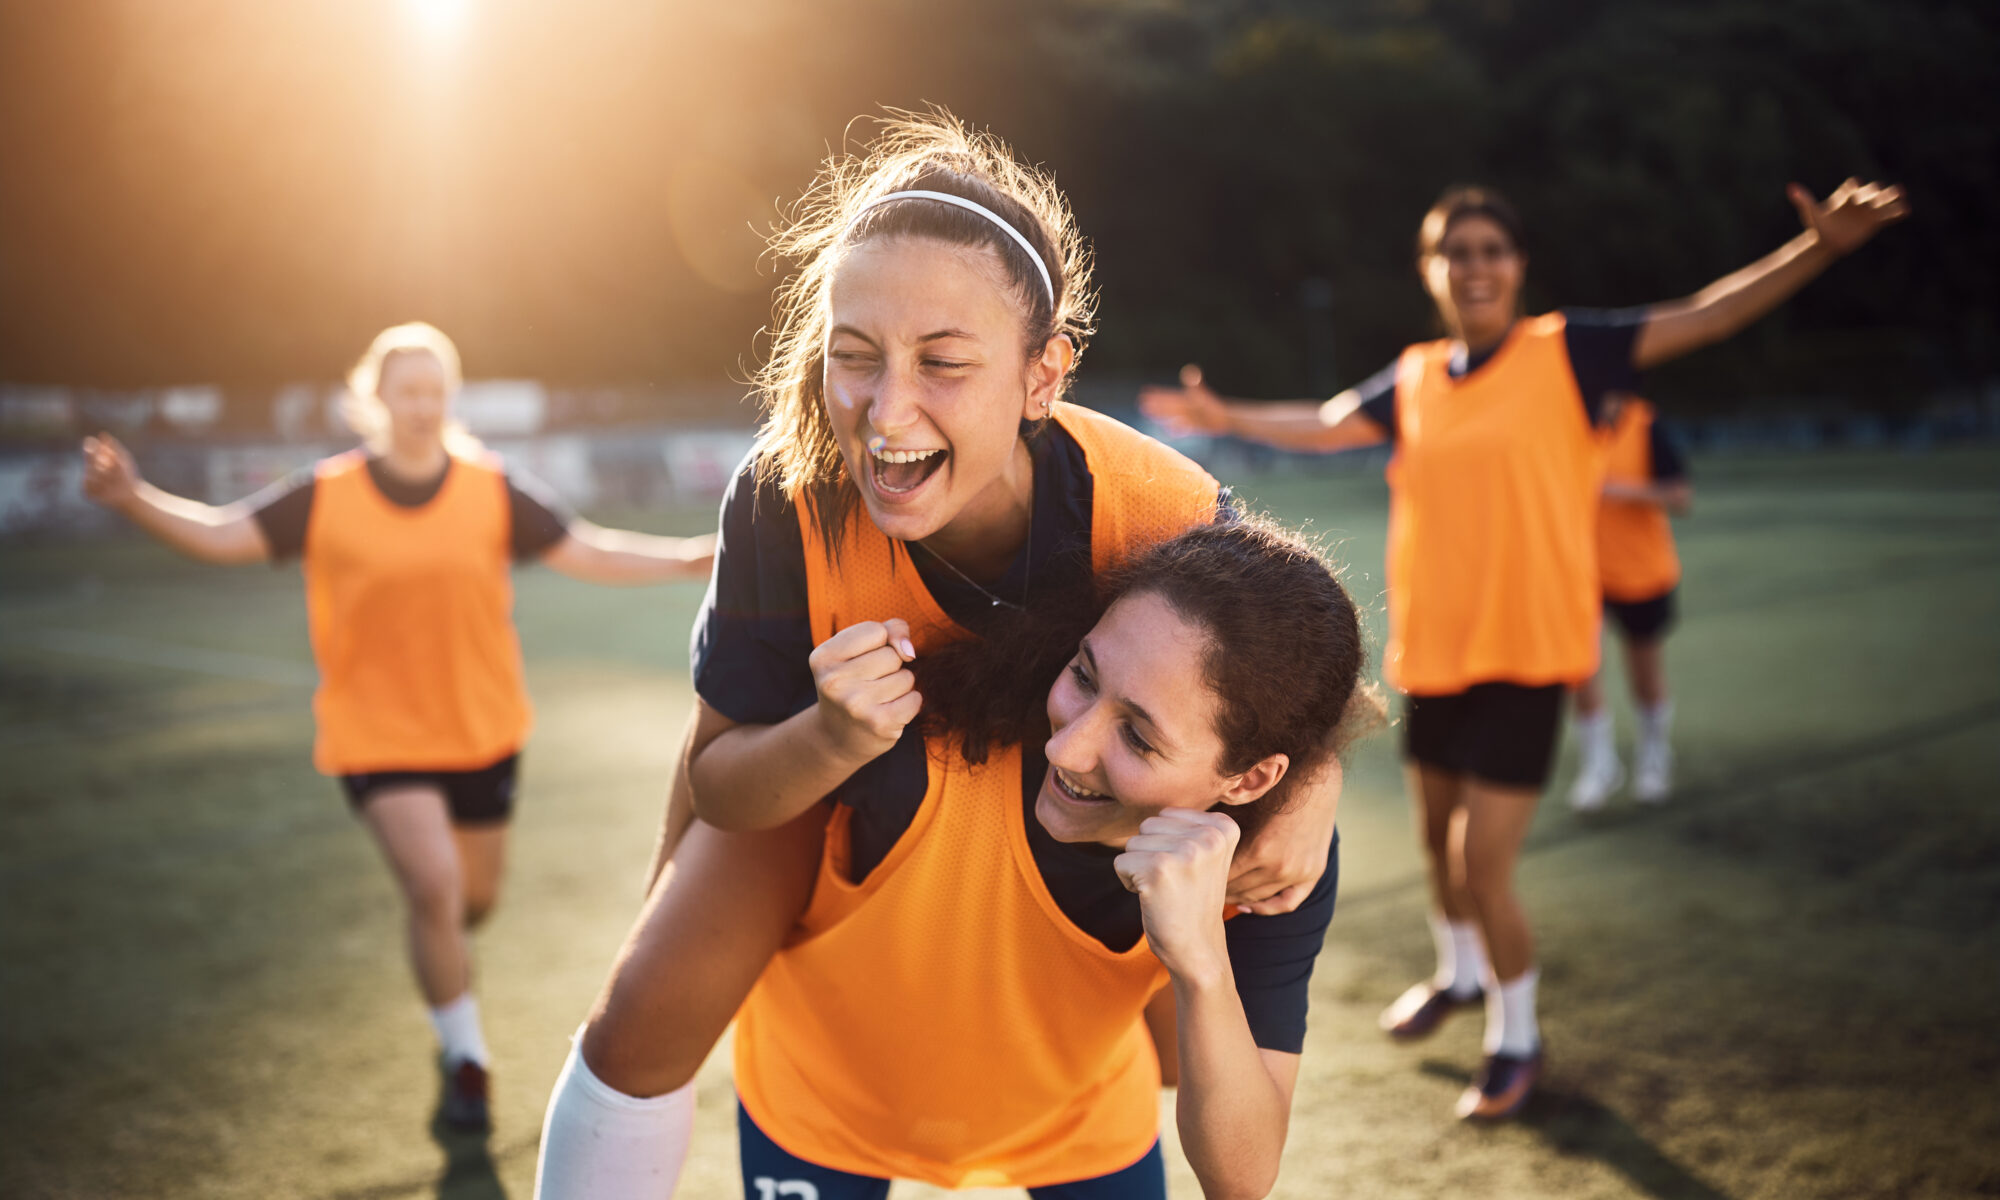 Glade kvindelige spillere fejrer et mål under en fodboldkamp på stadion,